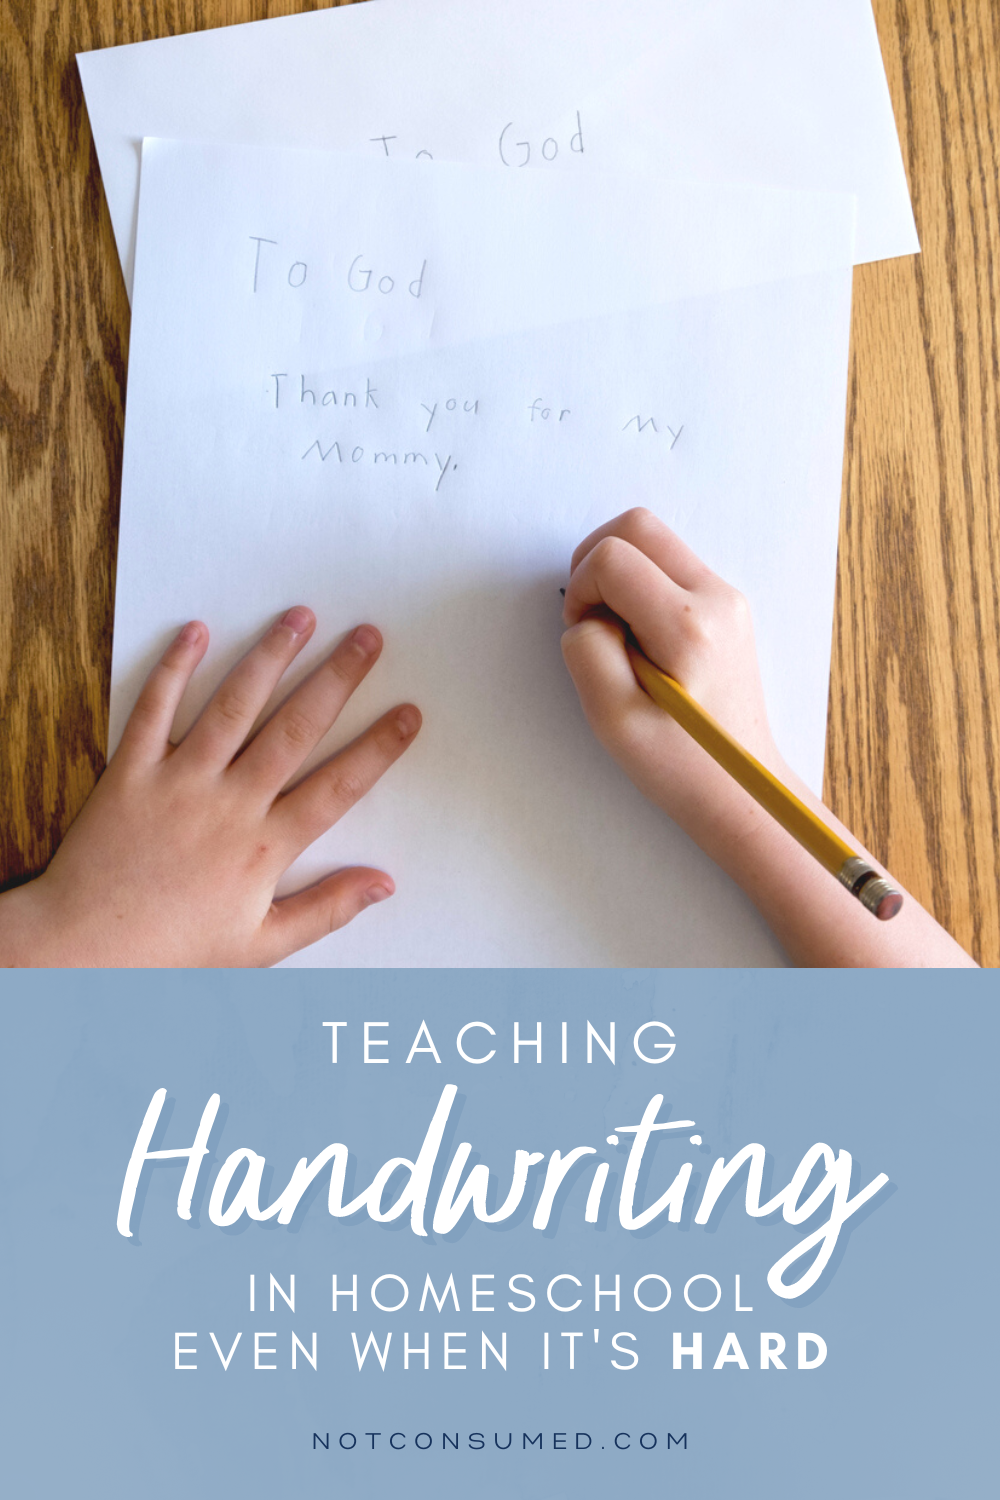 Teaching Handwriting